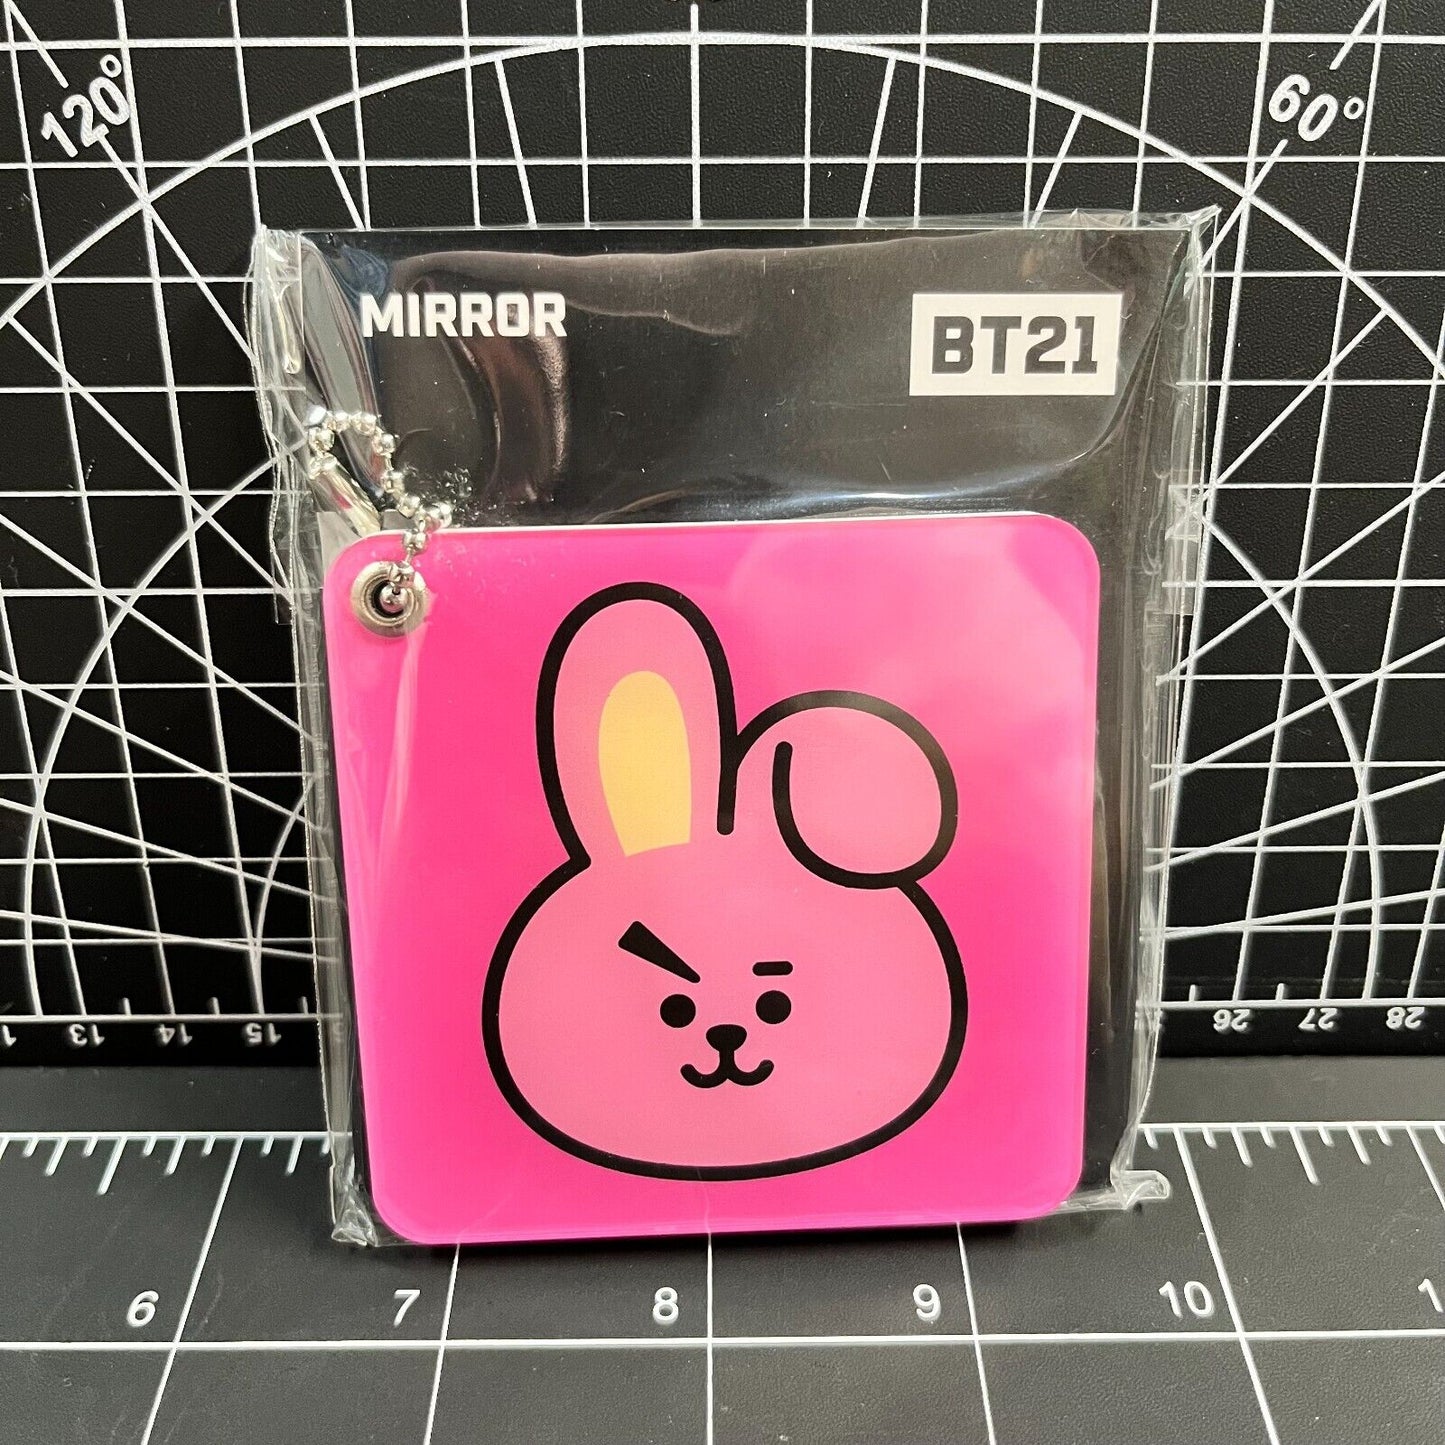 BTS BT21 Official Merchandise - Cooky Mirror Keychain